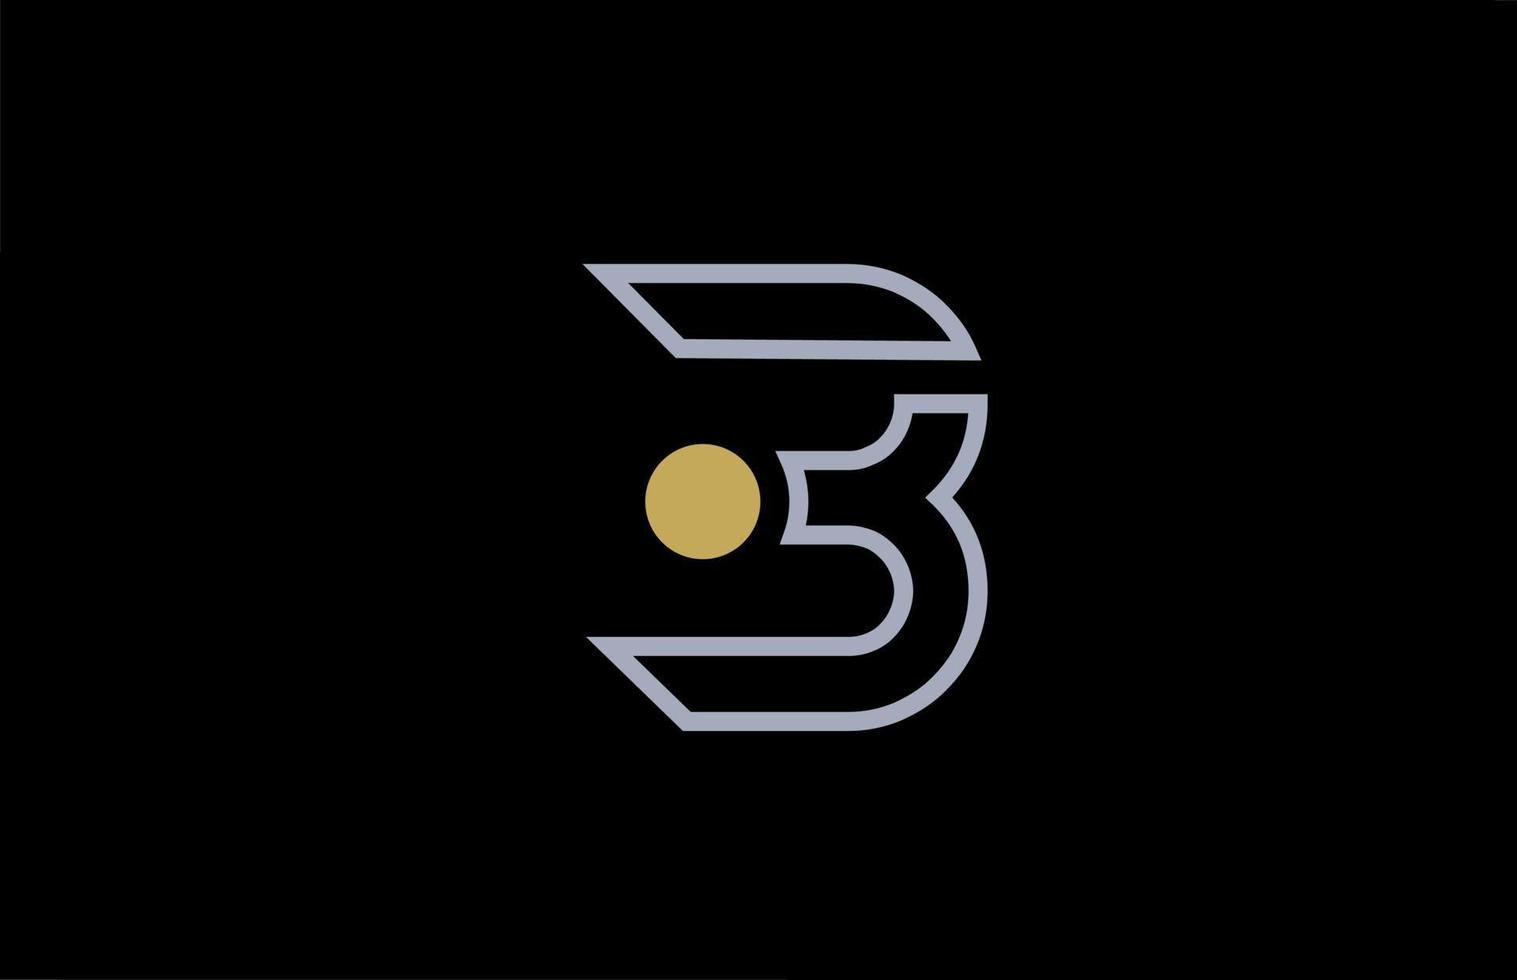 zwart witte lijn b alfabet letter logo ontwerp met gele pictogram cirkel stip voor zaken en bedrijf vector